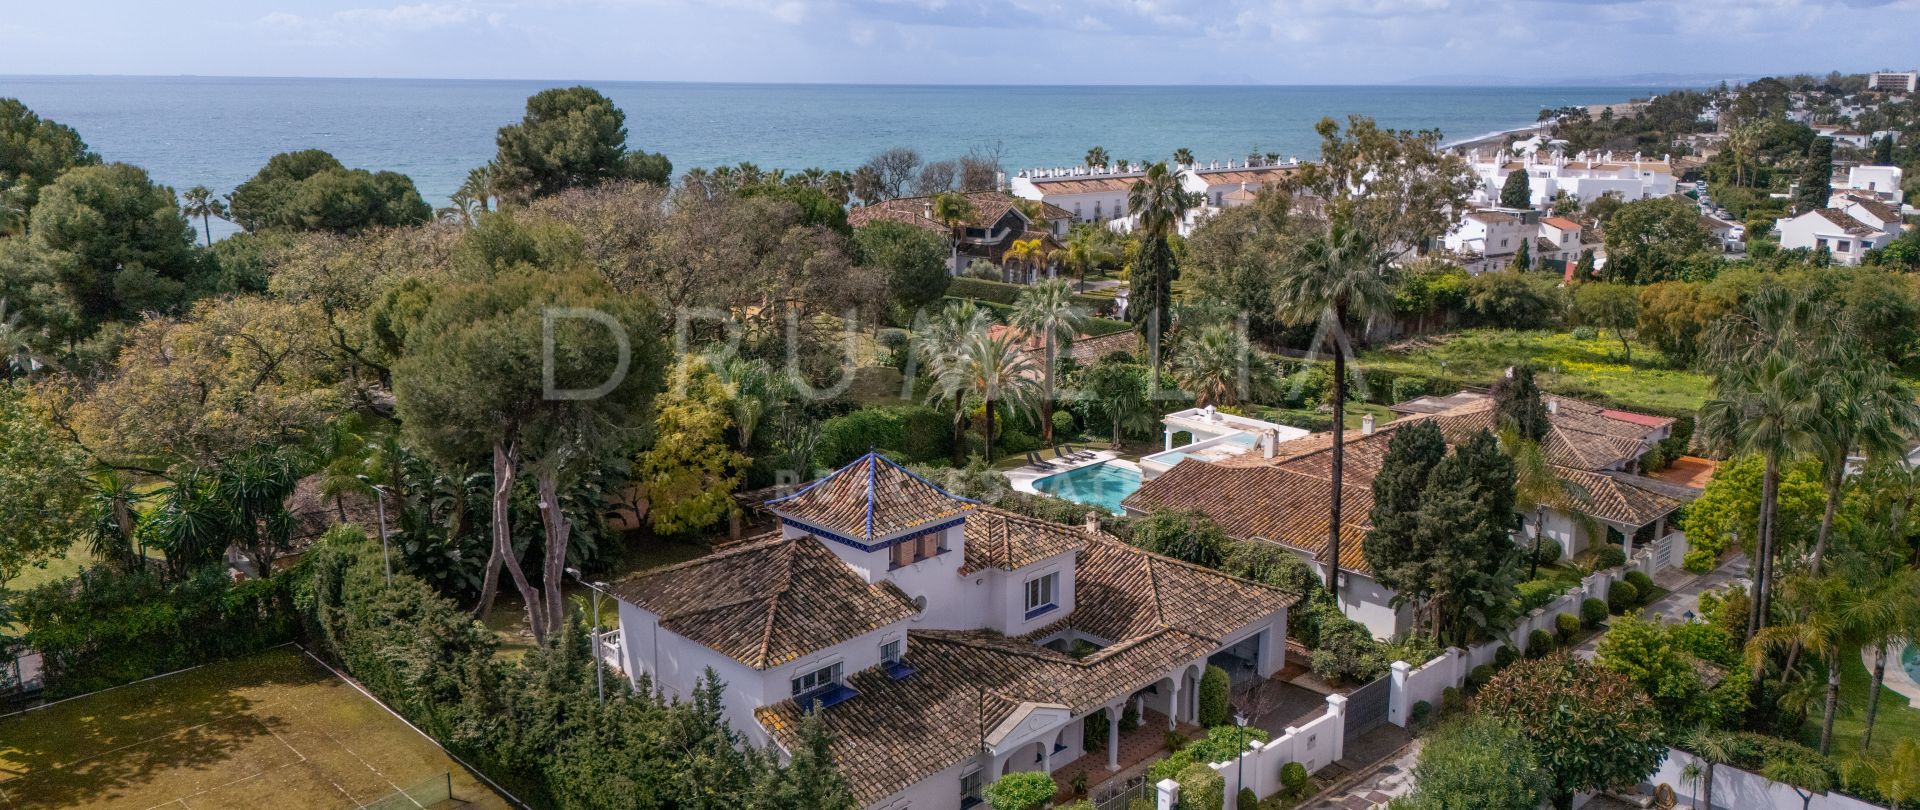 Encantadora villa andaluza a poca distancia de la playa en venta en El Paraiso Barronal